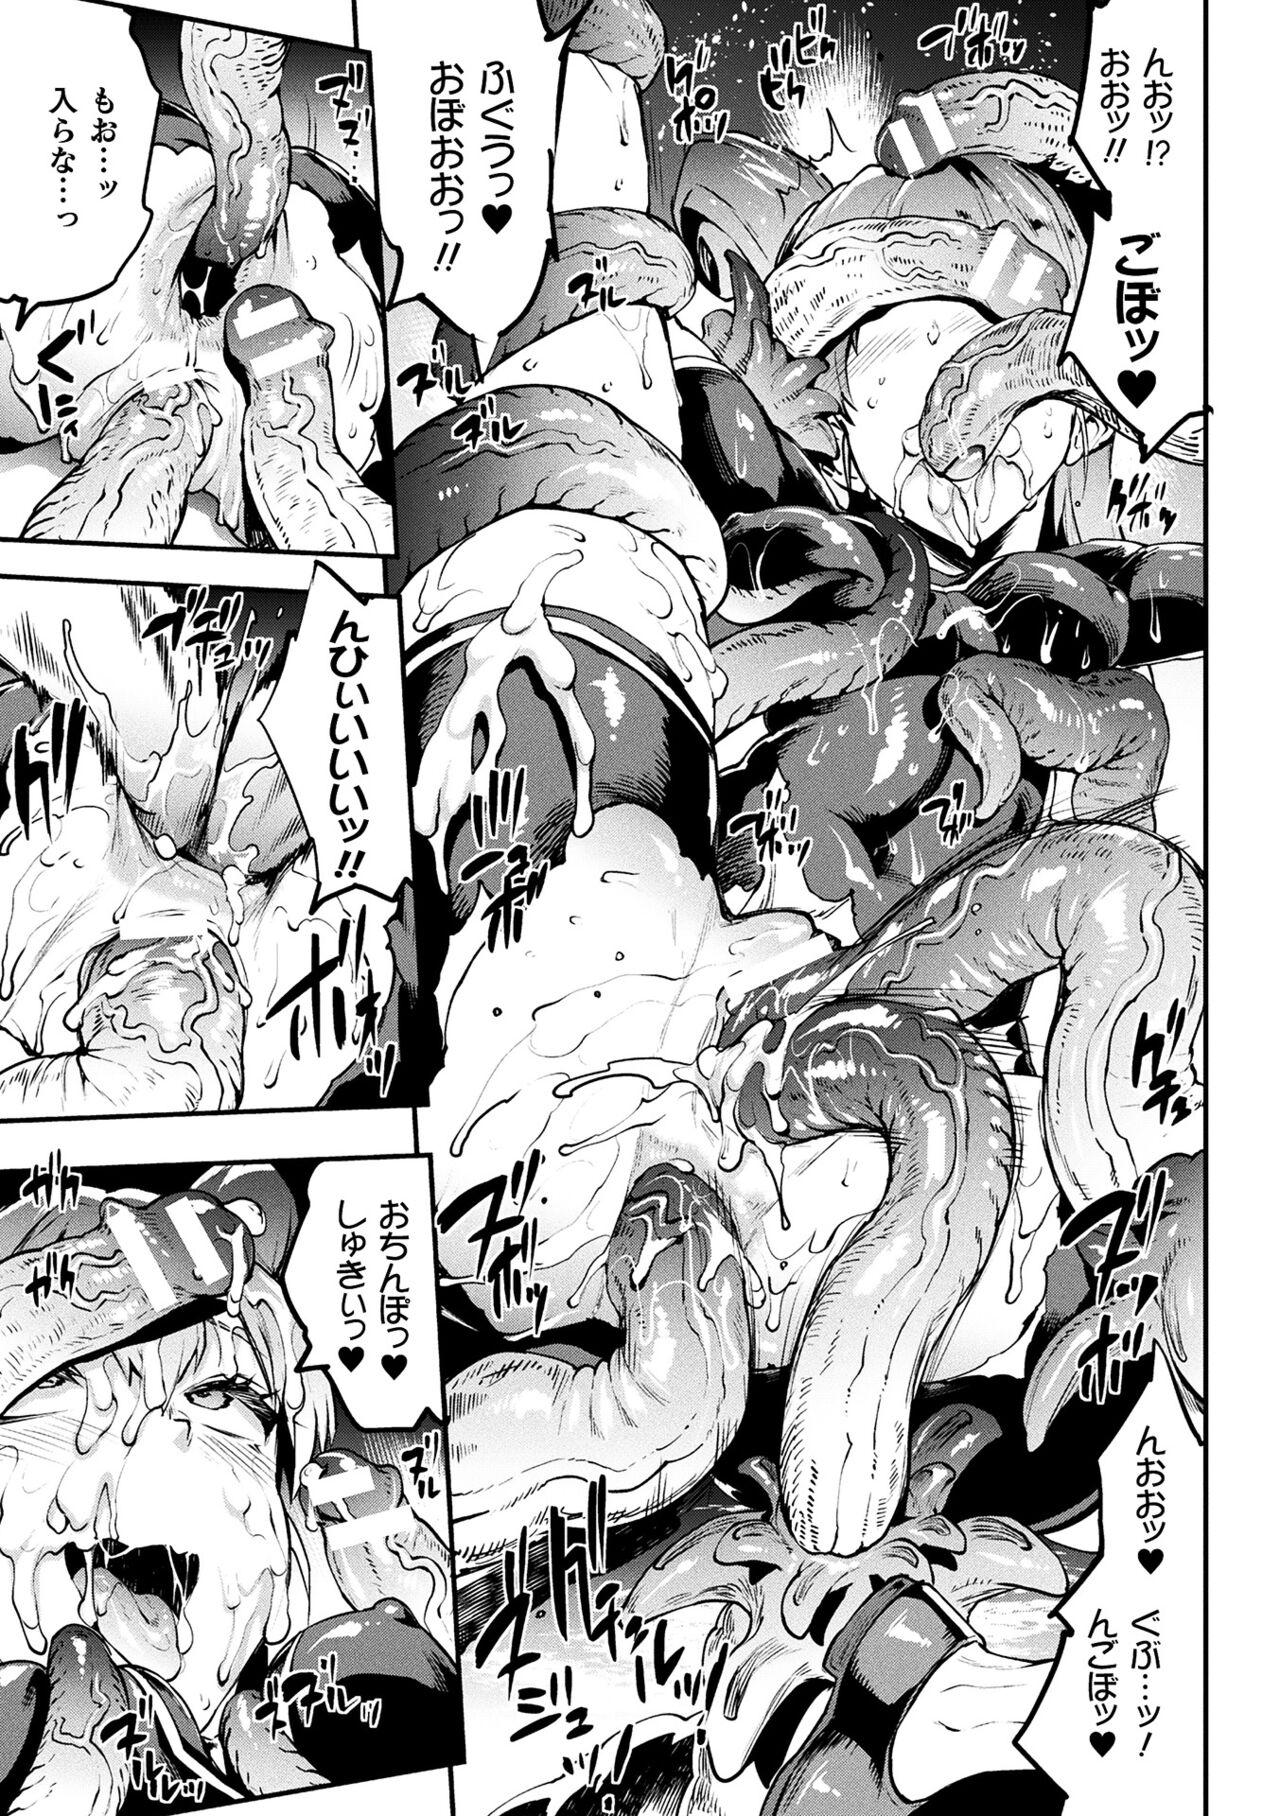 [Erect Sawaru] Raikou Shinki Igis Magia III -PANDRA saga 3rd ignition- 4 [Digital] 62